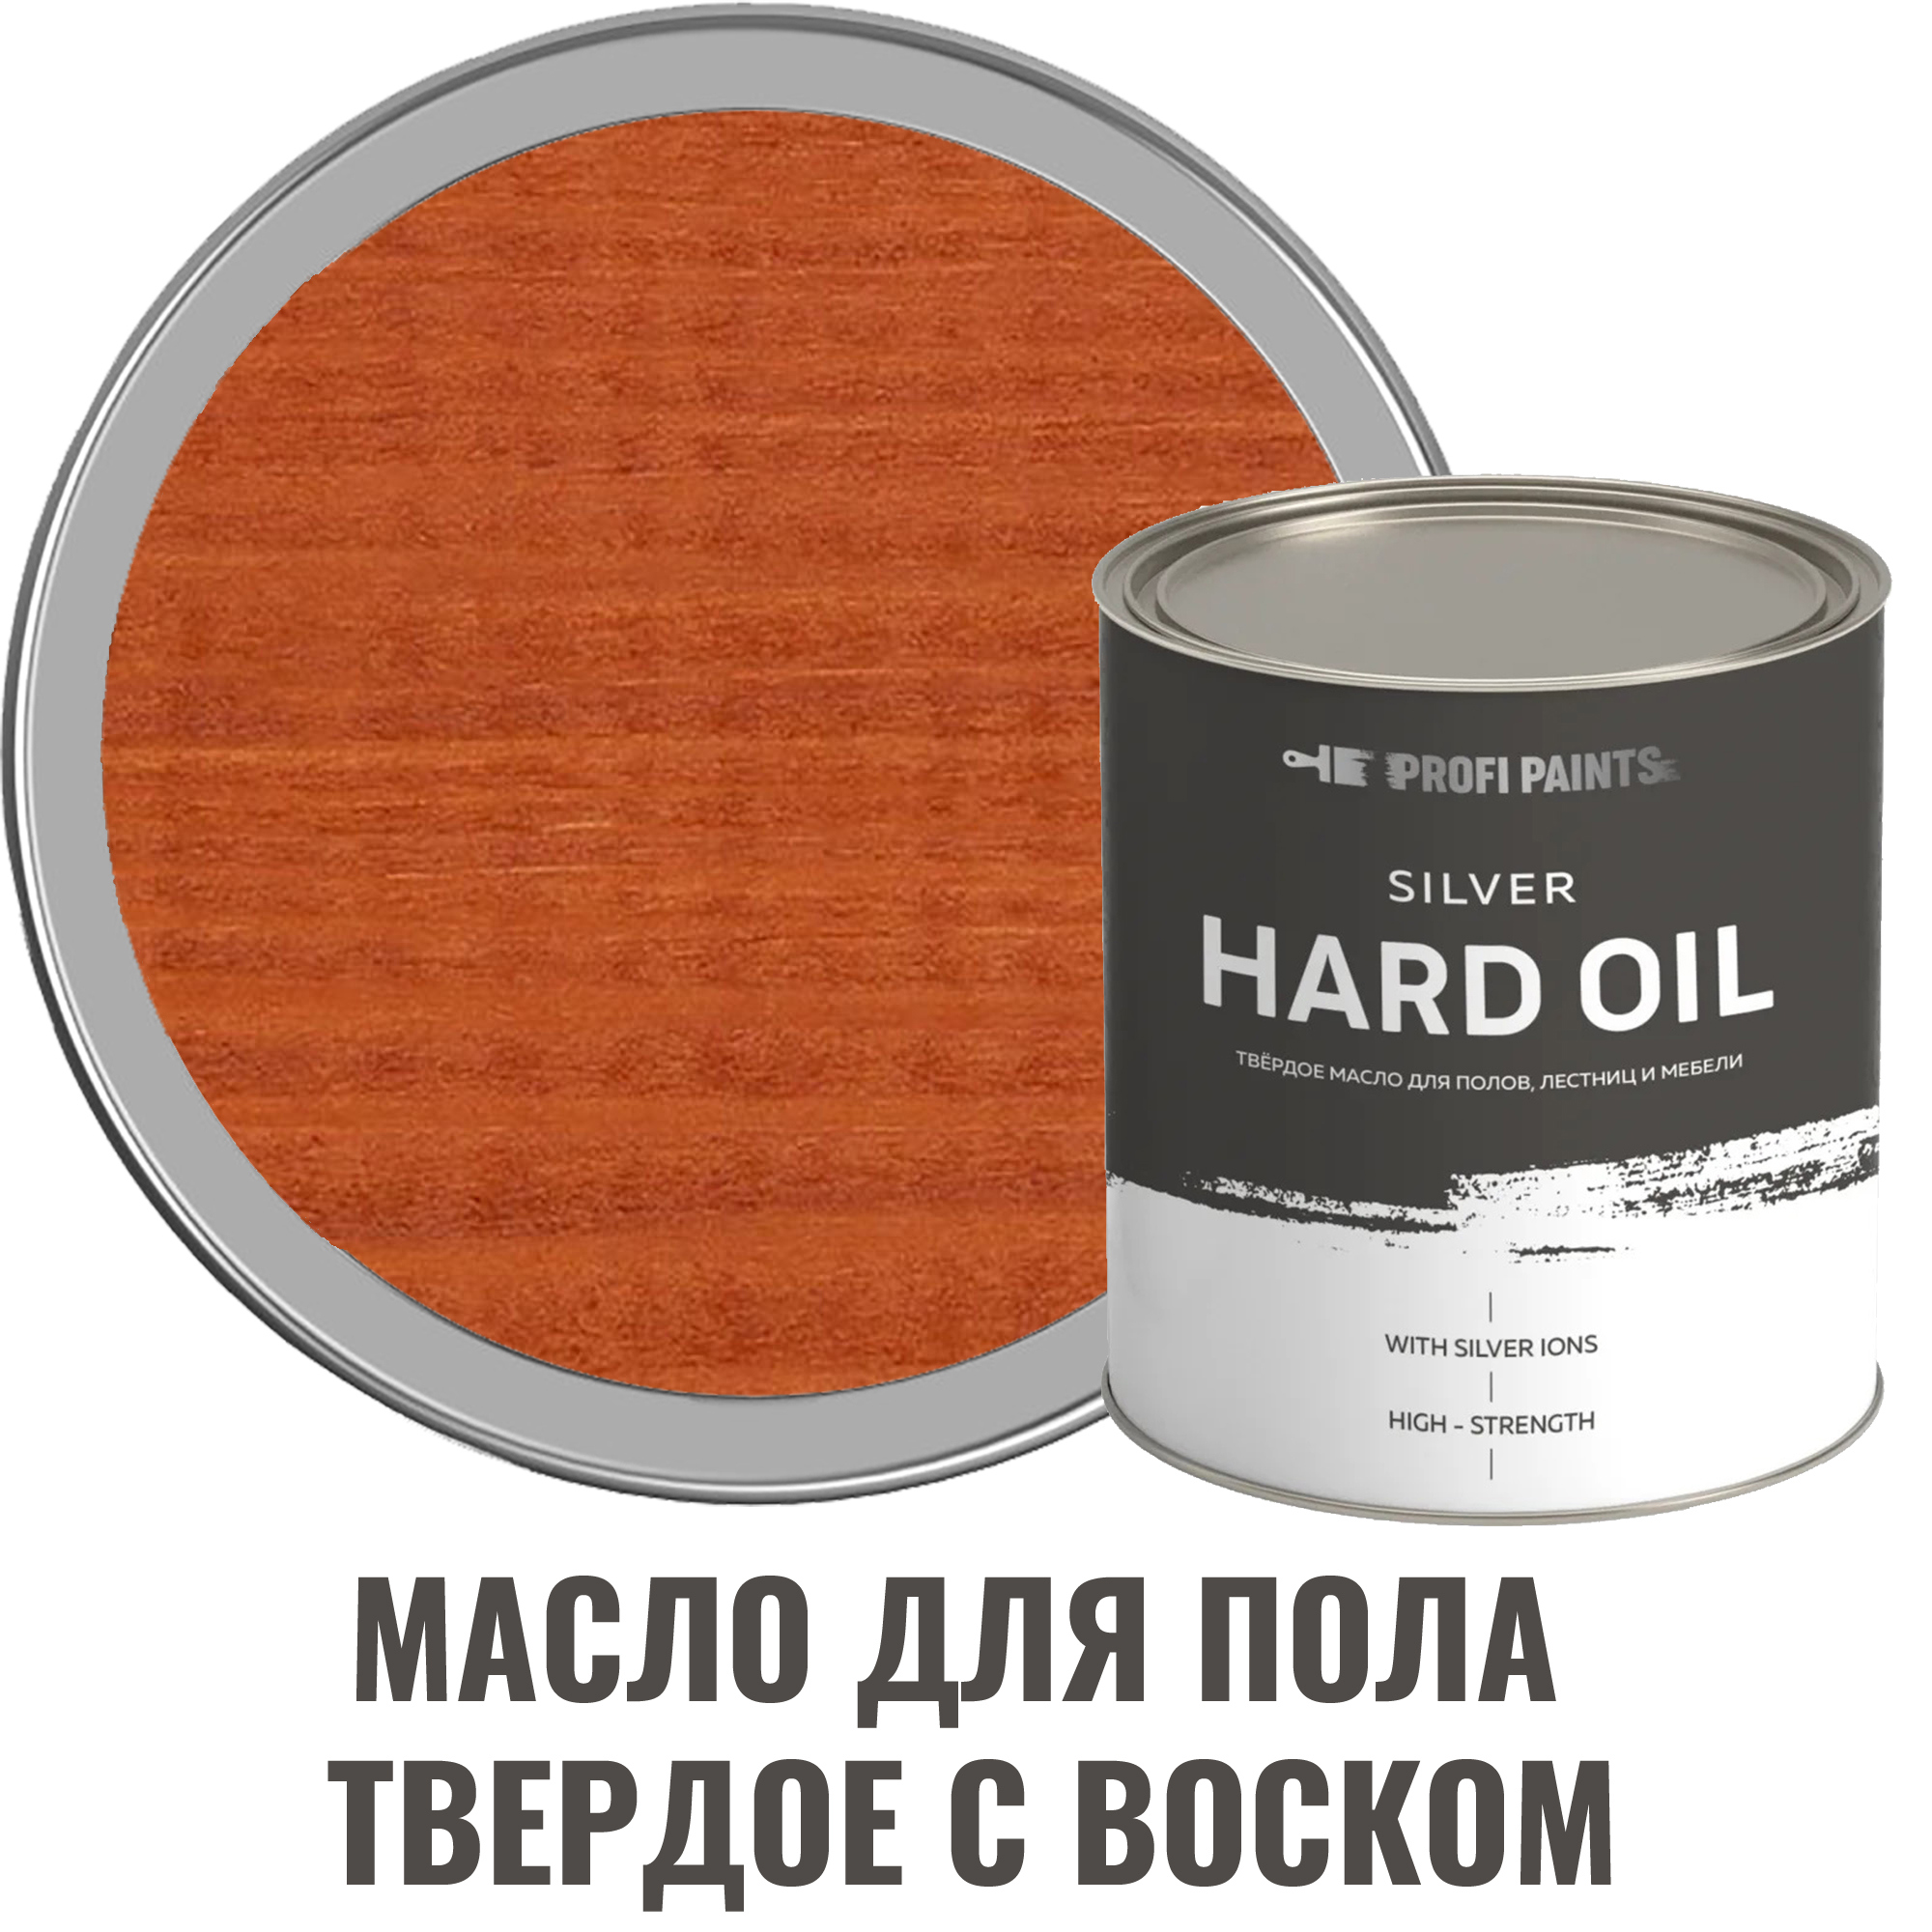 91095464 Масло для пола 10728_D Silver Hard Oil цвет рябина 0.9 л STLM-0481822 PROFIPAINTS